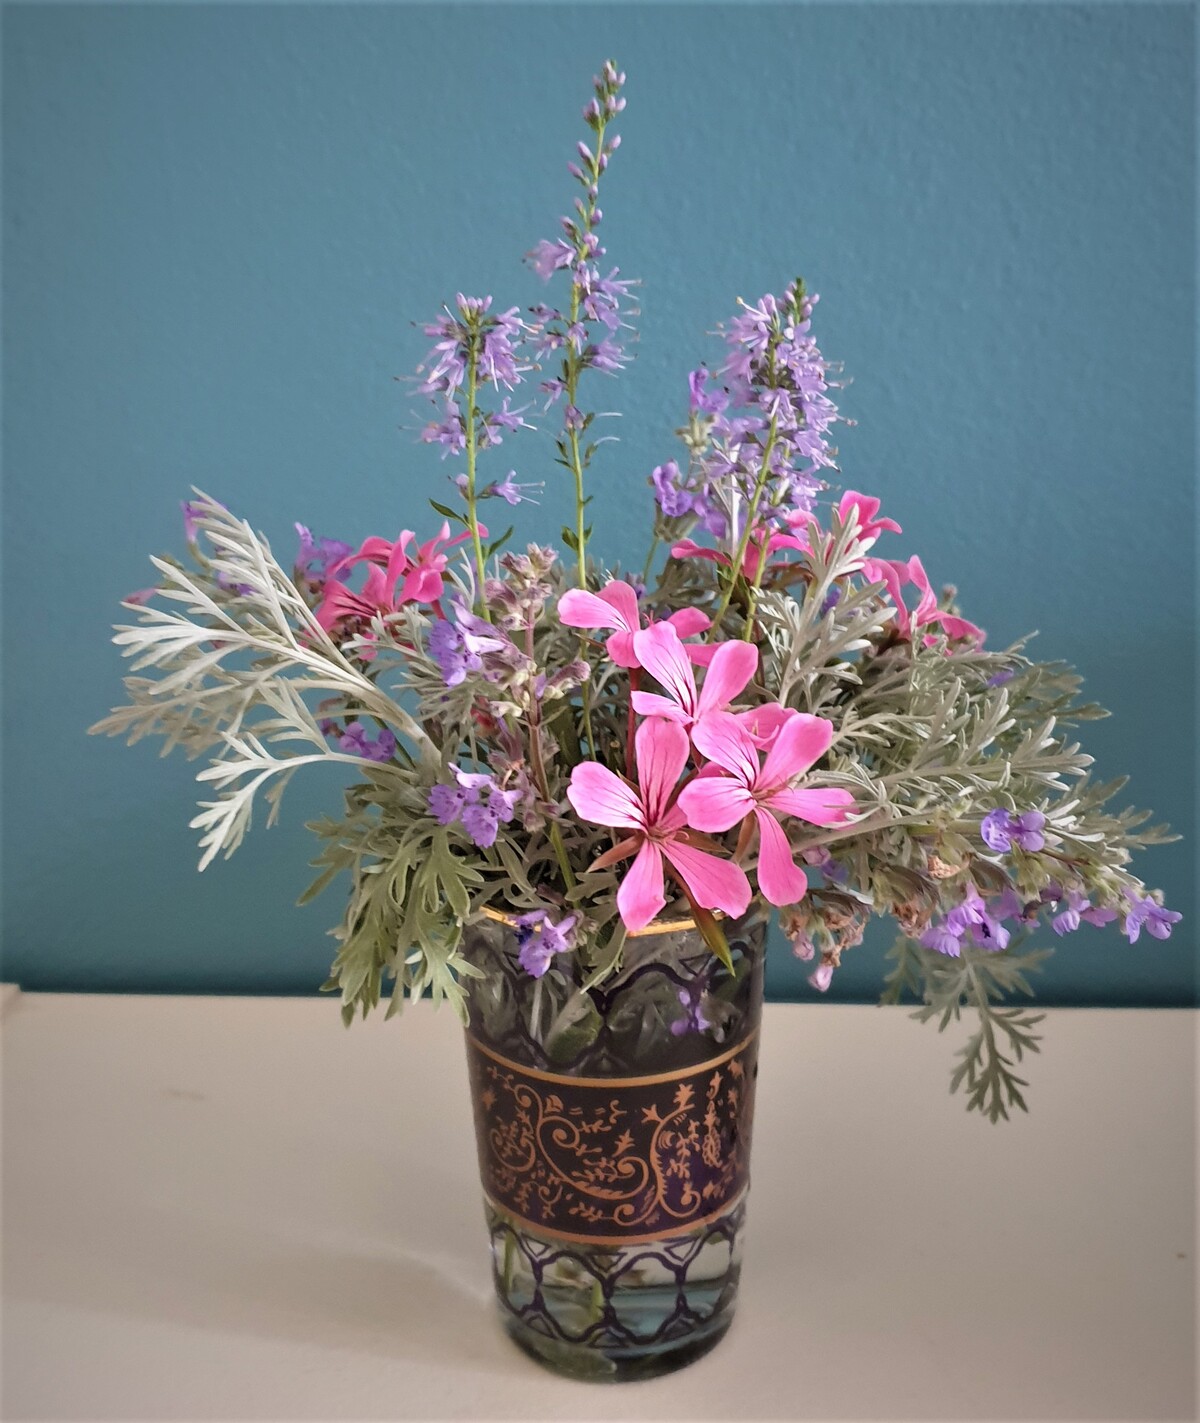 bouquet armoise , nepetas, veroniques, geranium lierre